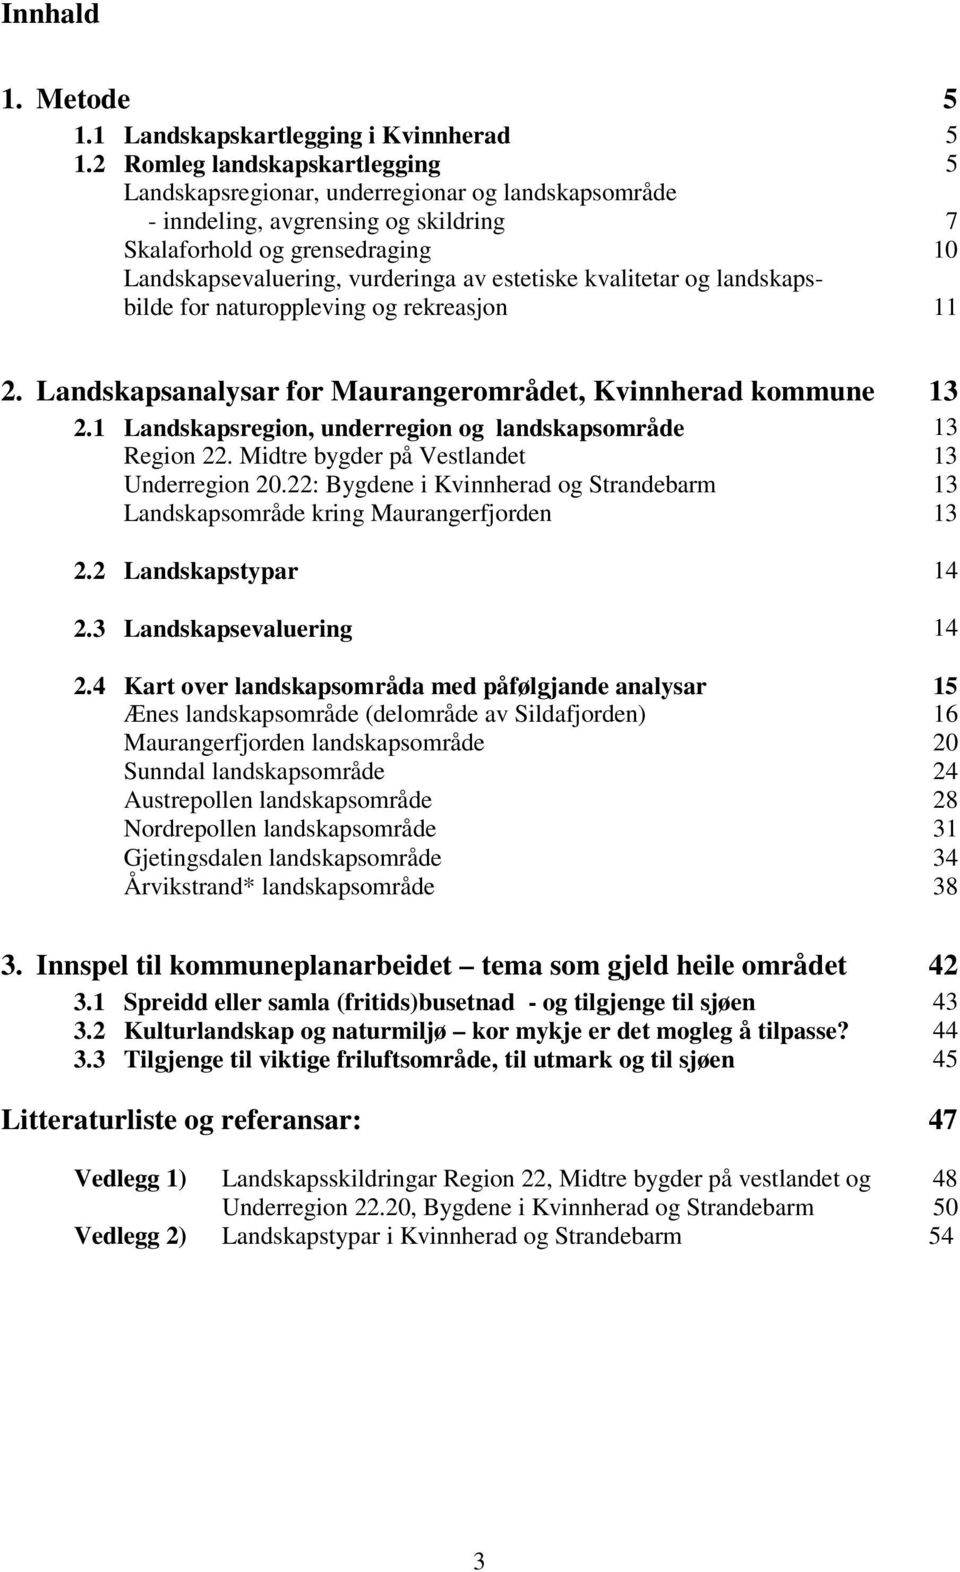 estetiske kvalitetar og landskapsbilde for naturoppleving og rekreasjon 11 2. Landskapsanalysar for Maurangerområdet, Kvinnherad kommune 13 2.